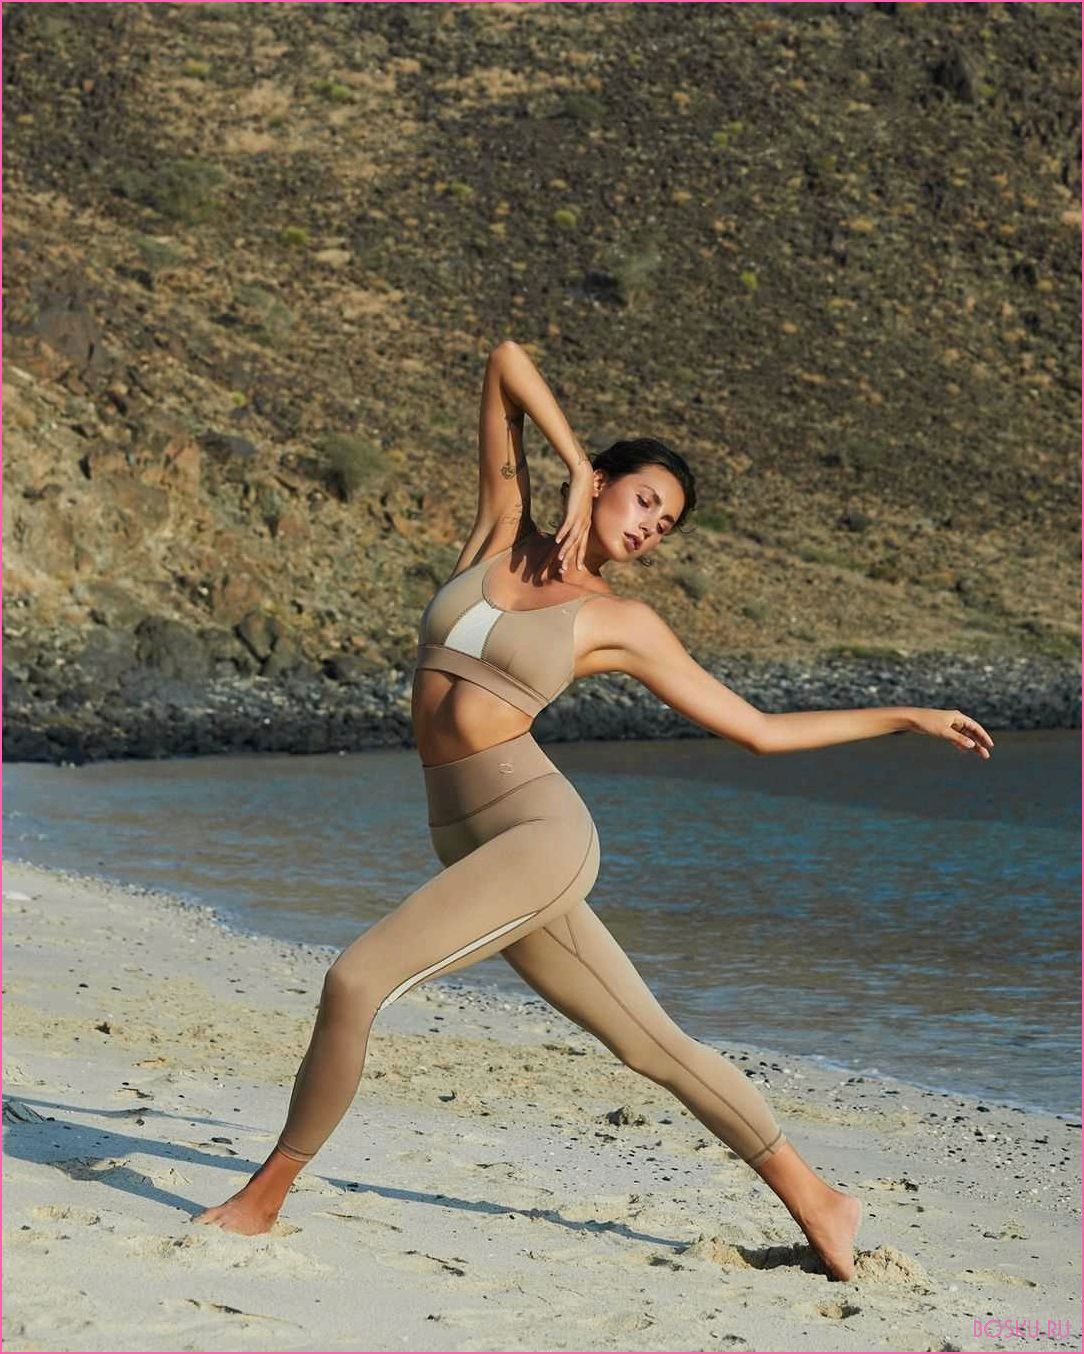 Puma exhale yoga: экологическая коллекция спортивного бренда